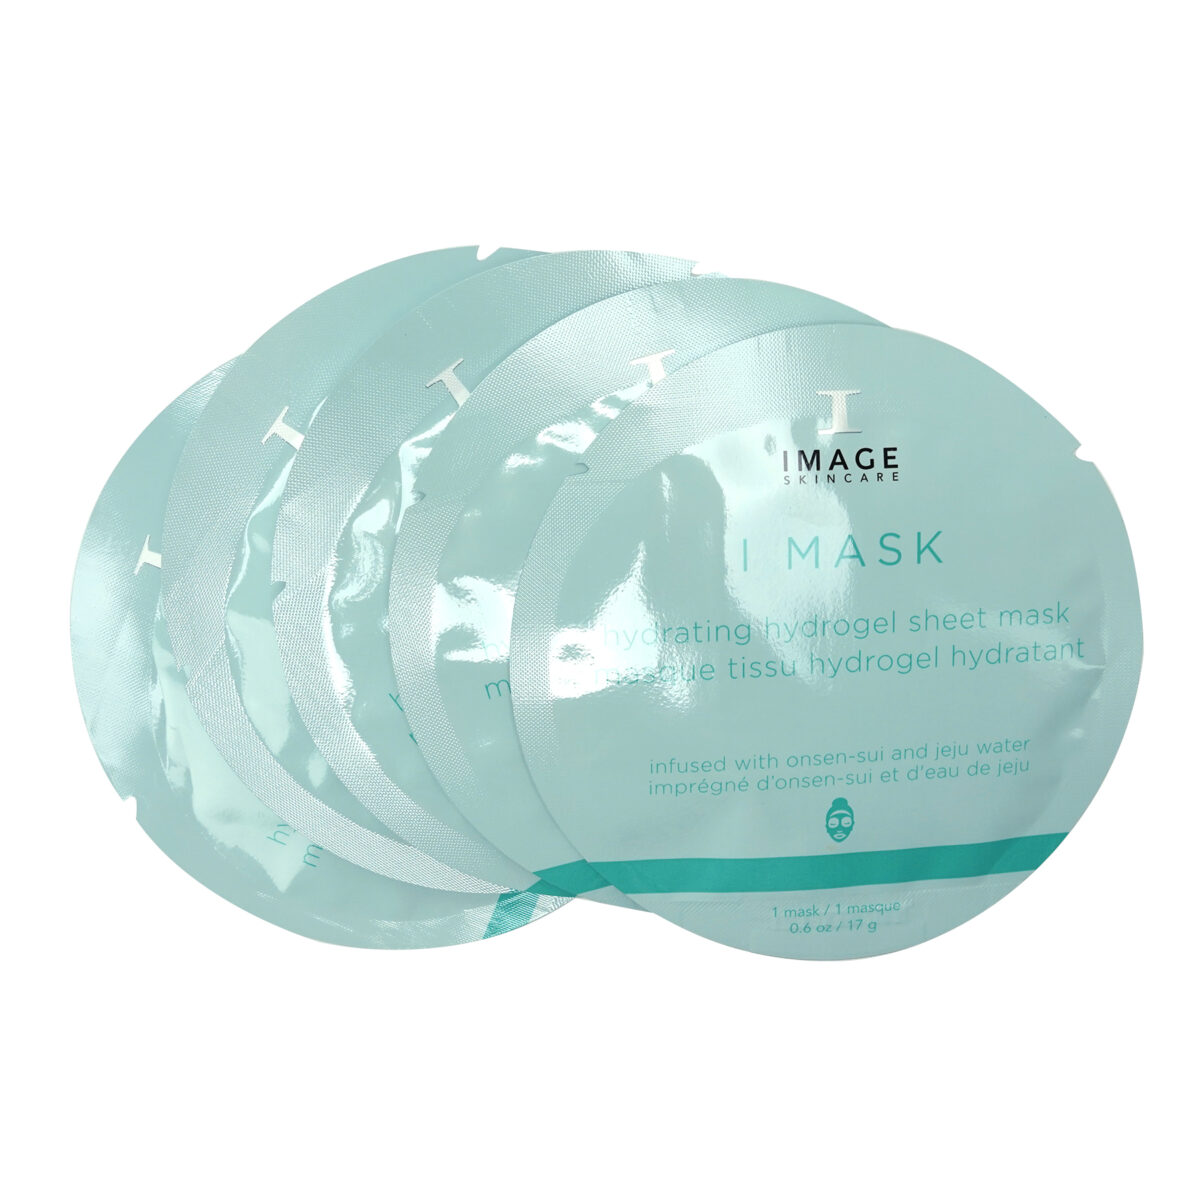 I Mask Hydrating Hydrogel Sheet Mask - Mặt nạ sinh học cấp ẩm chuyên sâu